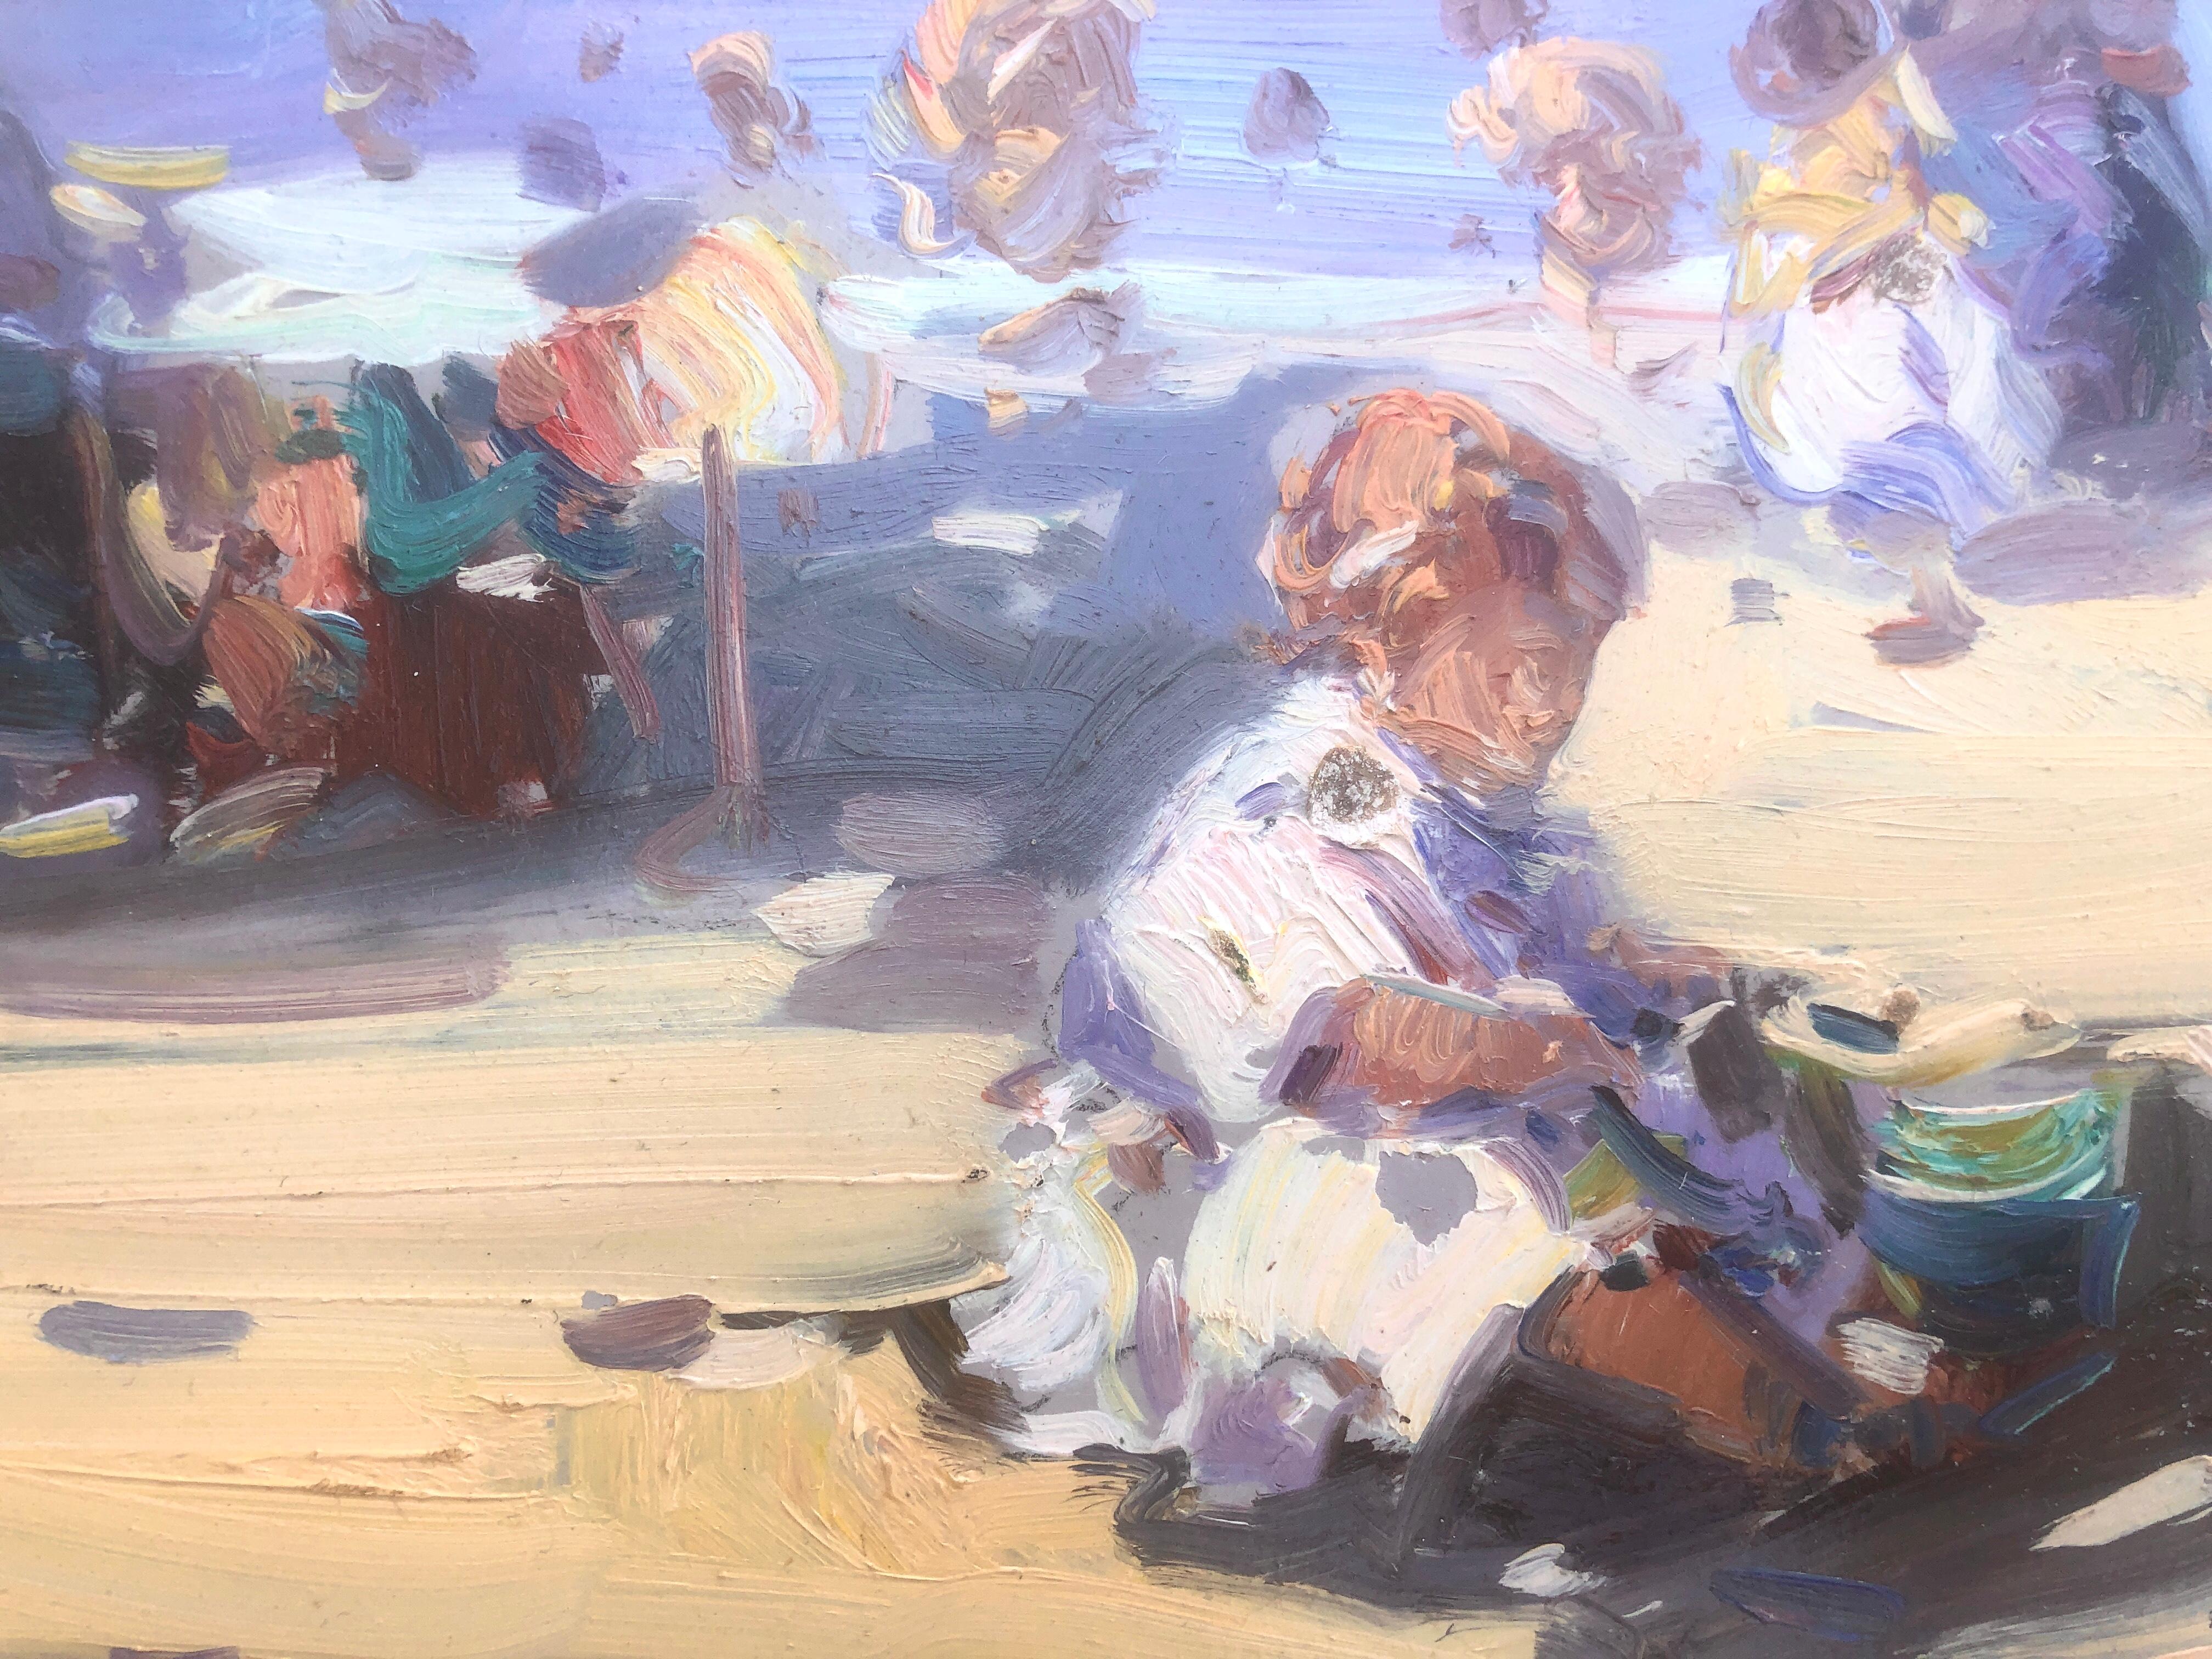 Espagnols sur la plage Espagne huile sur carton peinture - Post-impressionnisme Painting par Gabriel Casarrubios